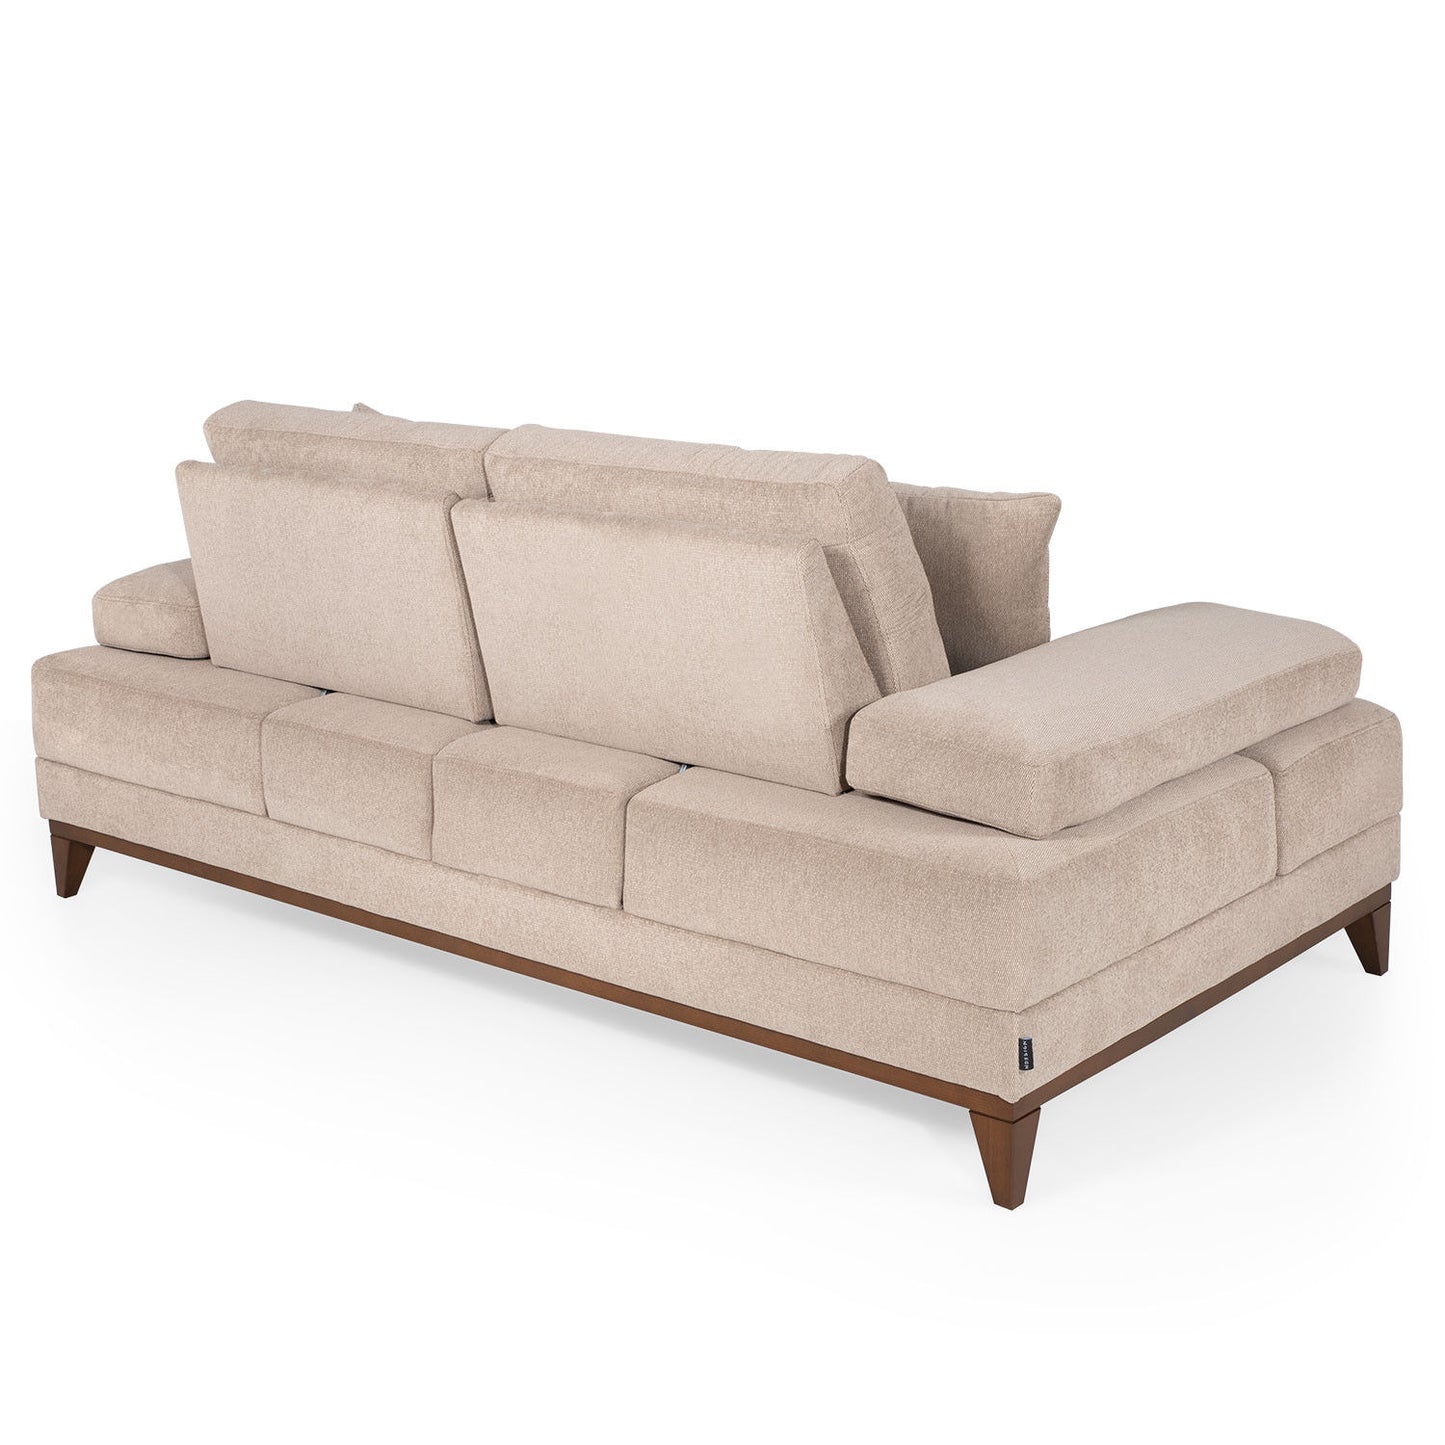 Sonya - 2-sæders sofa